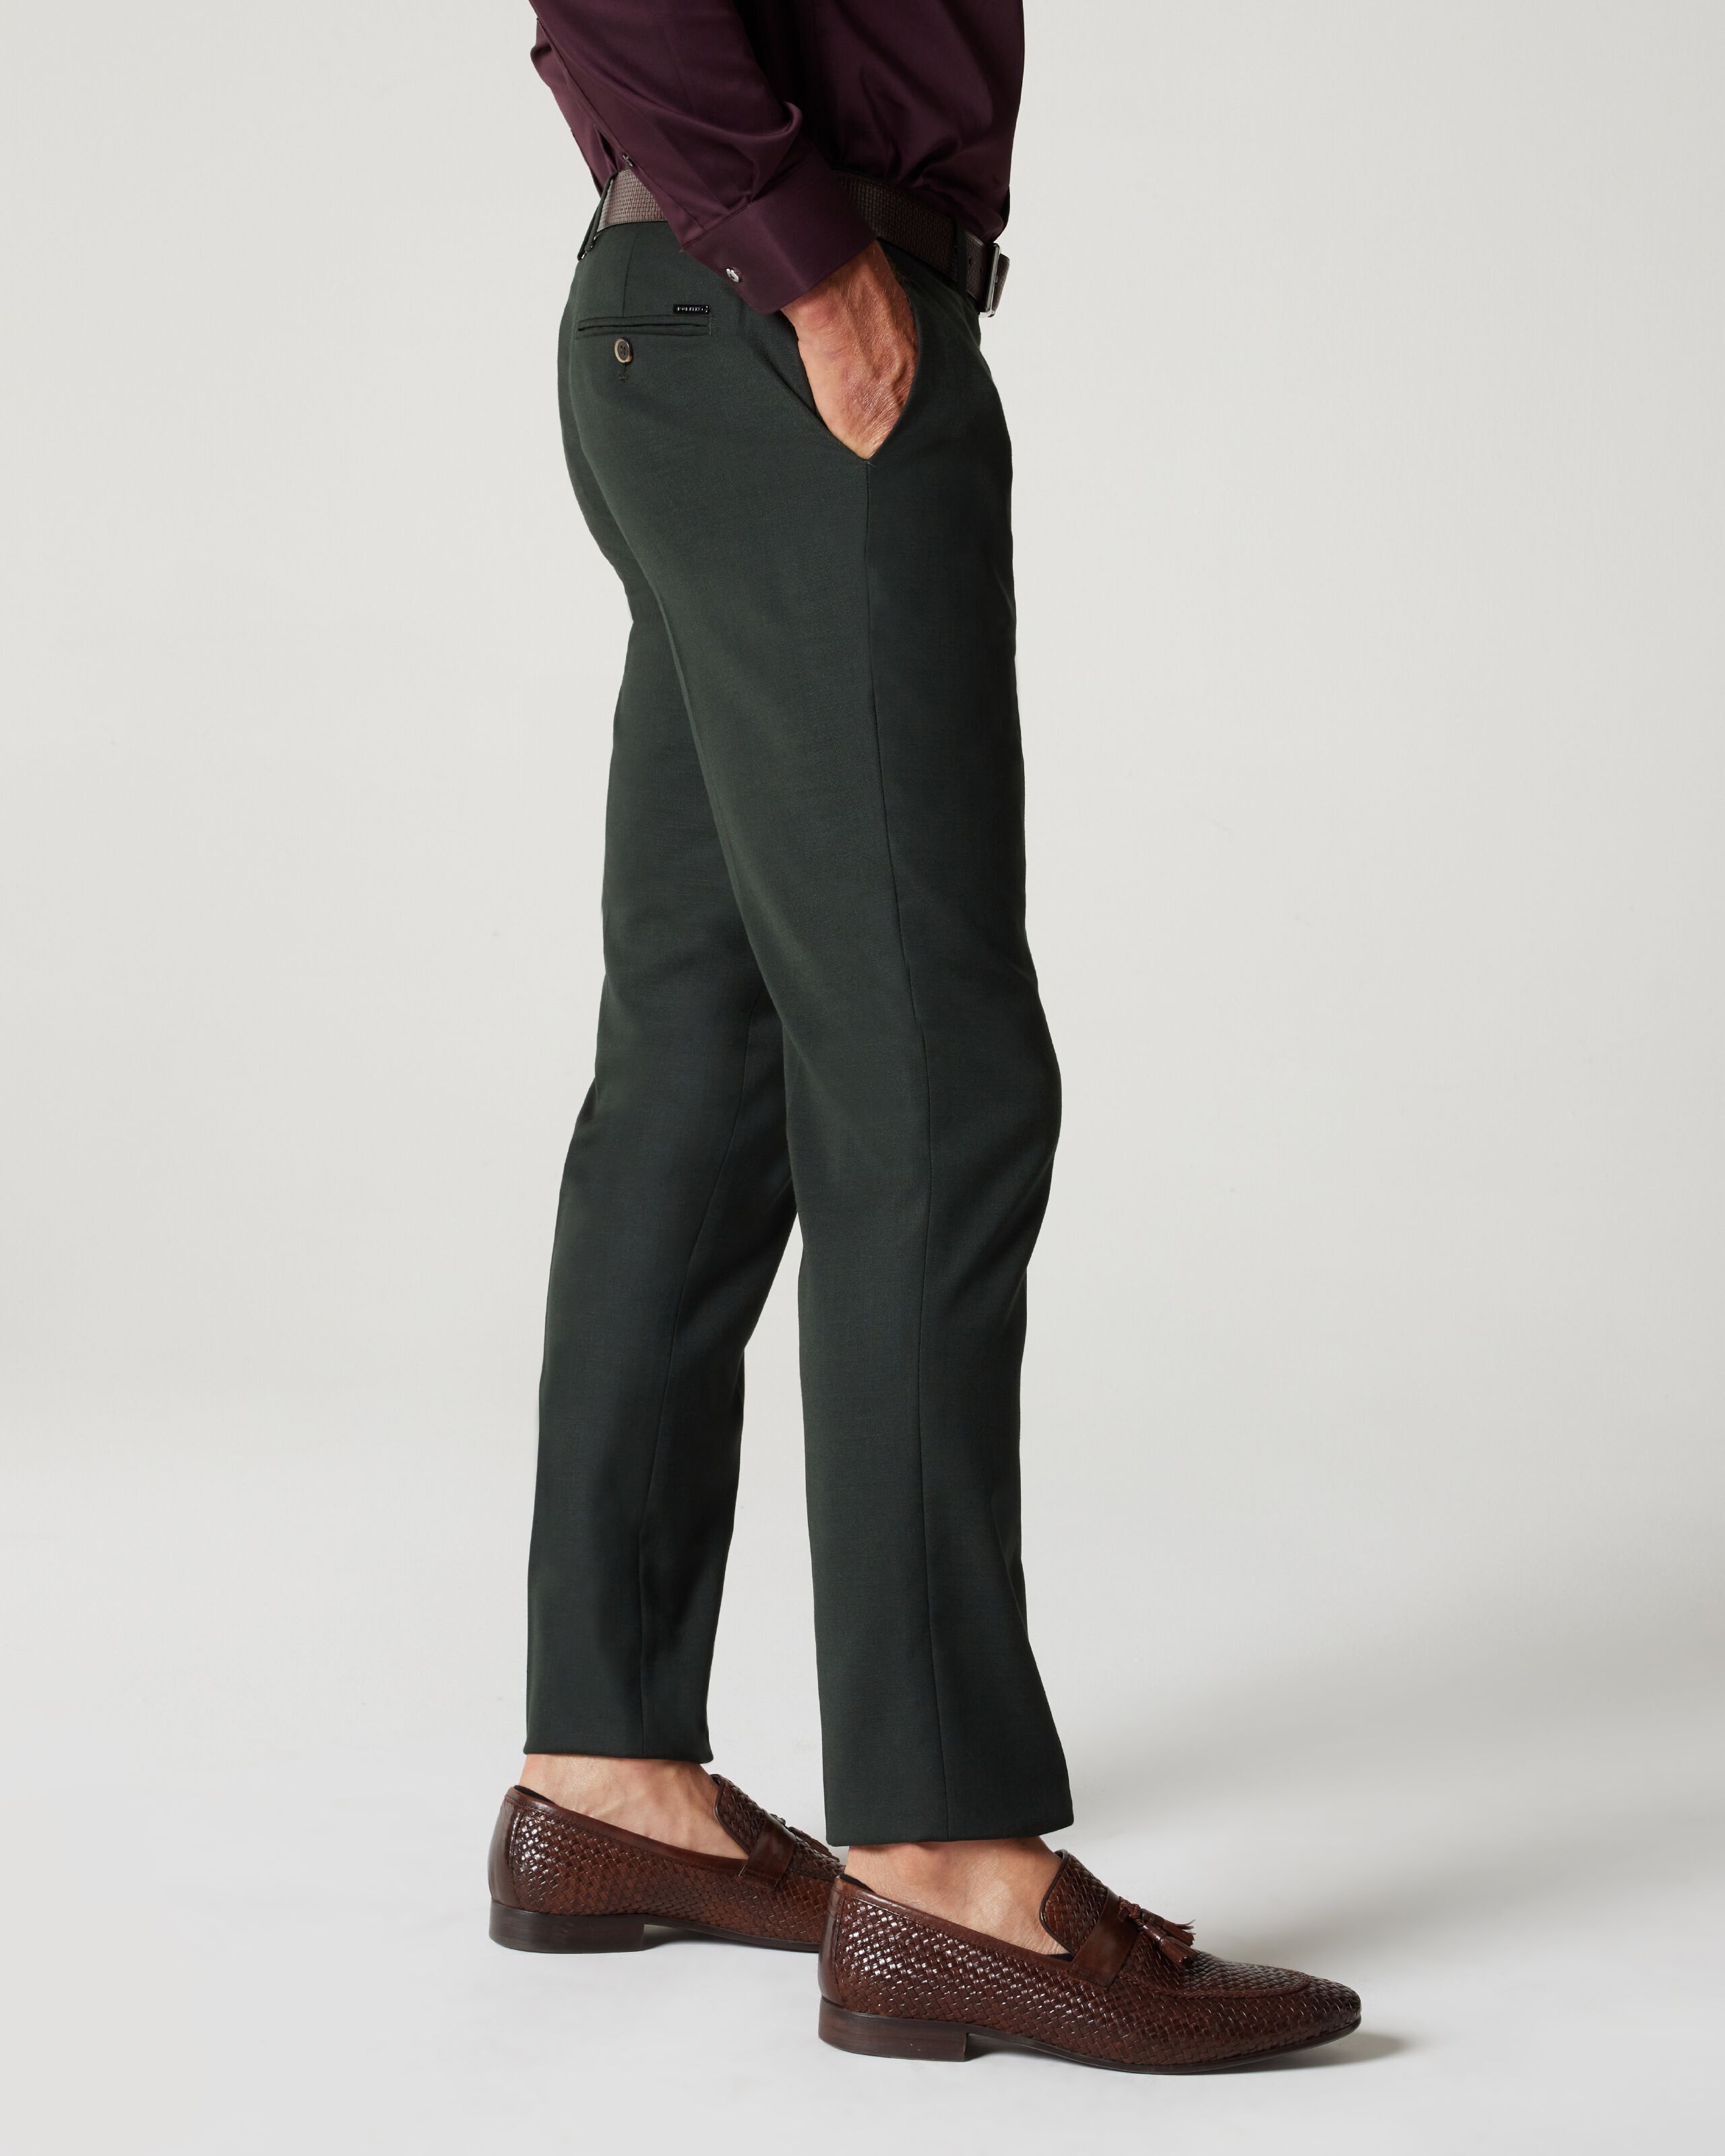 Men Herringbone Tweed Trousers Wool Blend Vintage Green Suit Pants Slim  Business | eBay